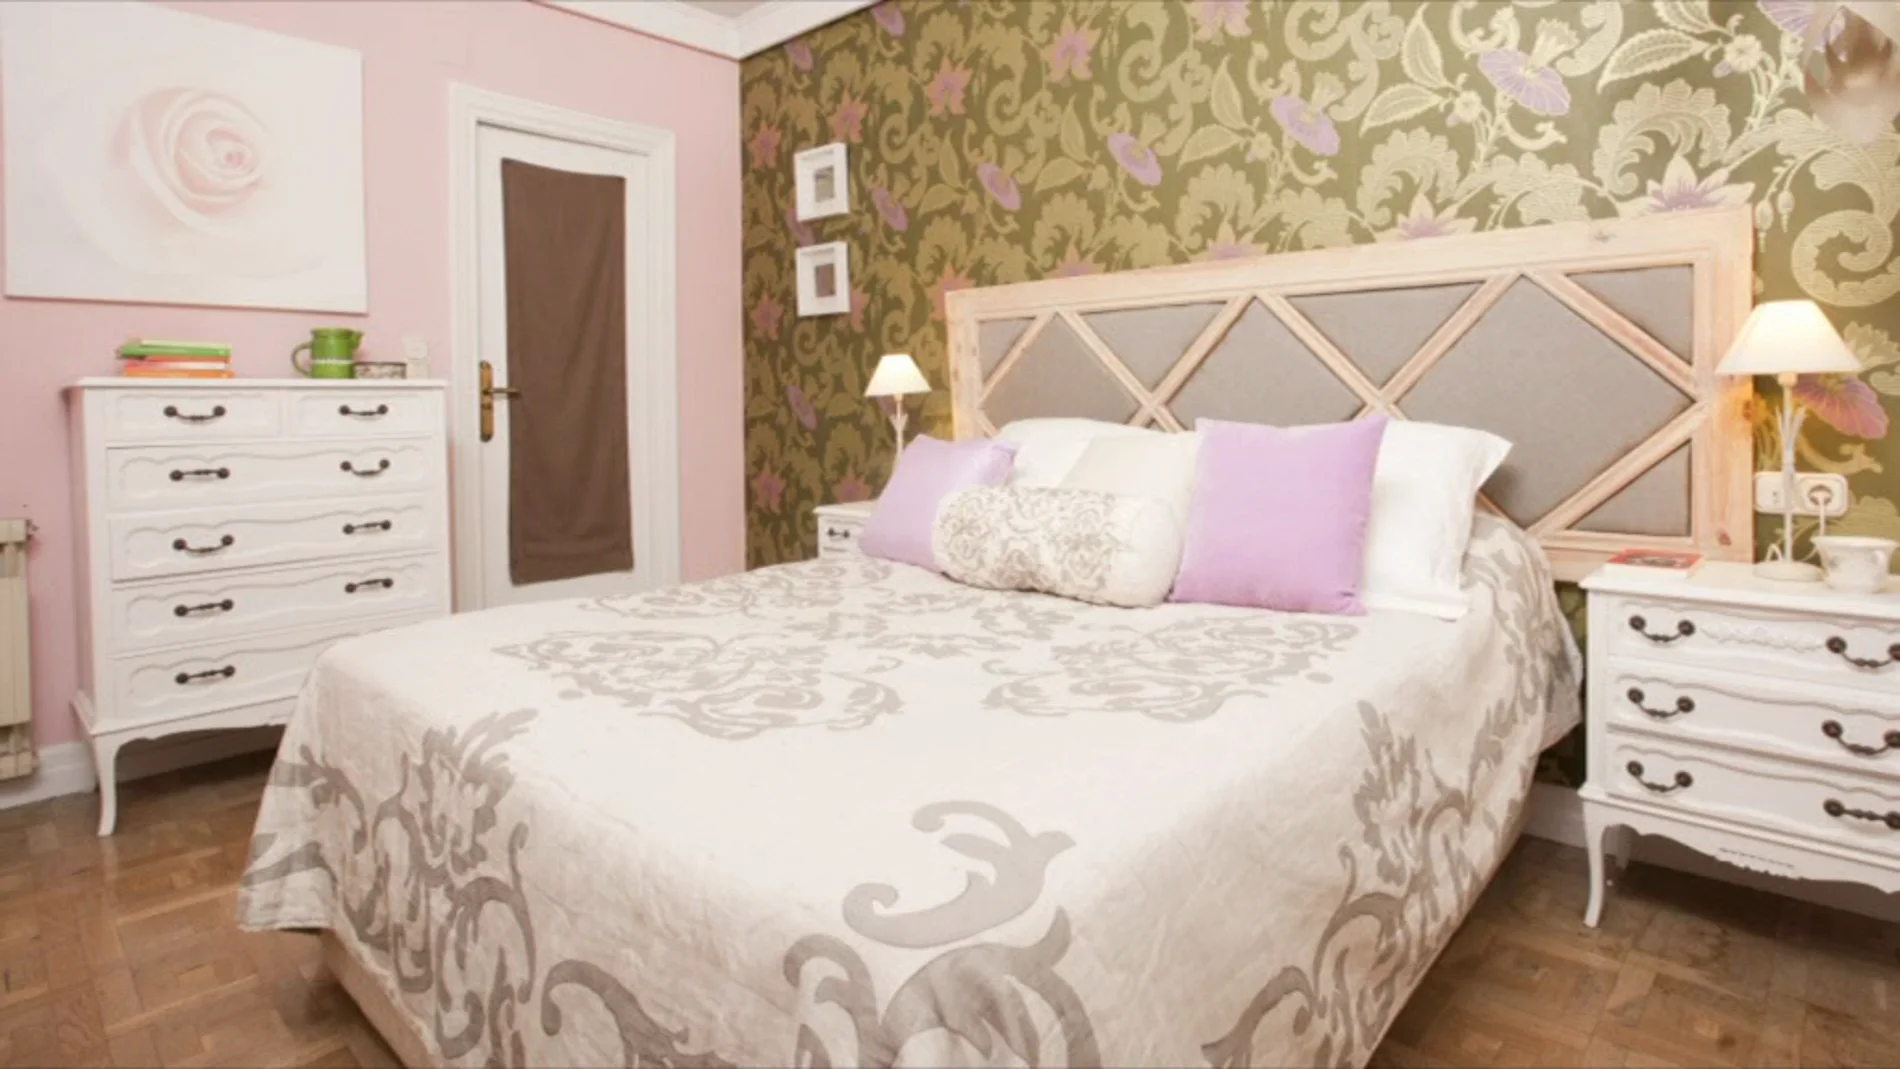 Un dormitorio muy romántico para Diana